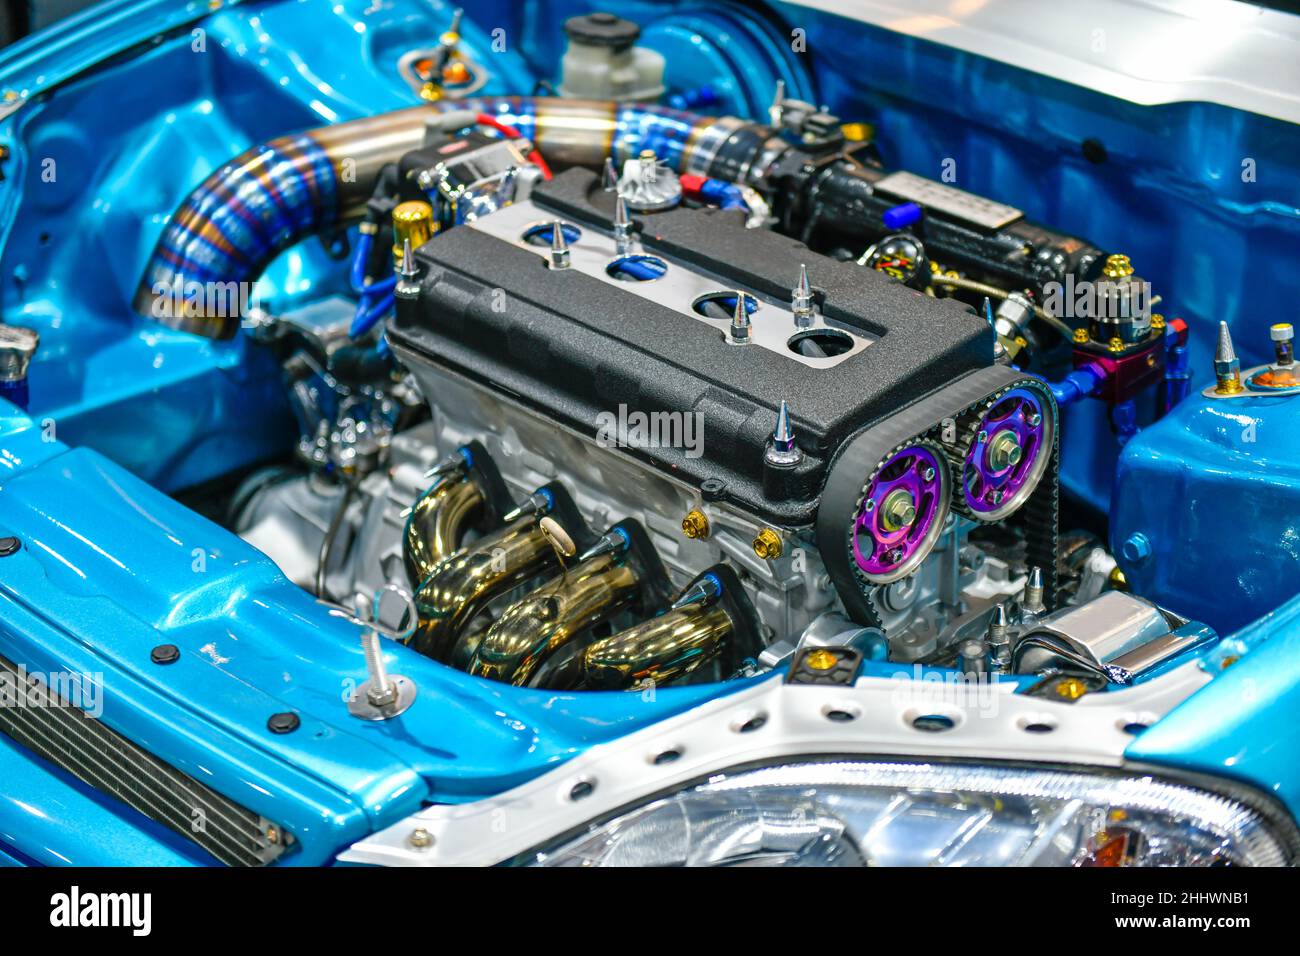 Detalles del motor azul del coche. Modificación del motor turbo Foto de stock